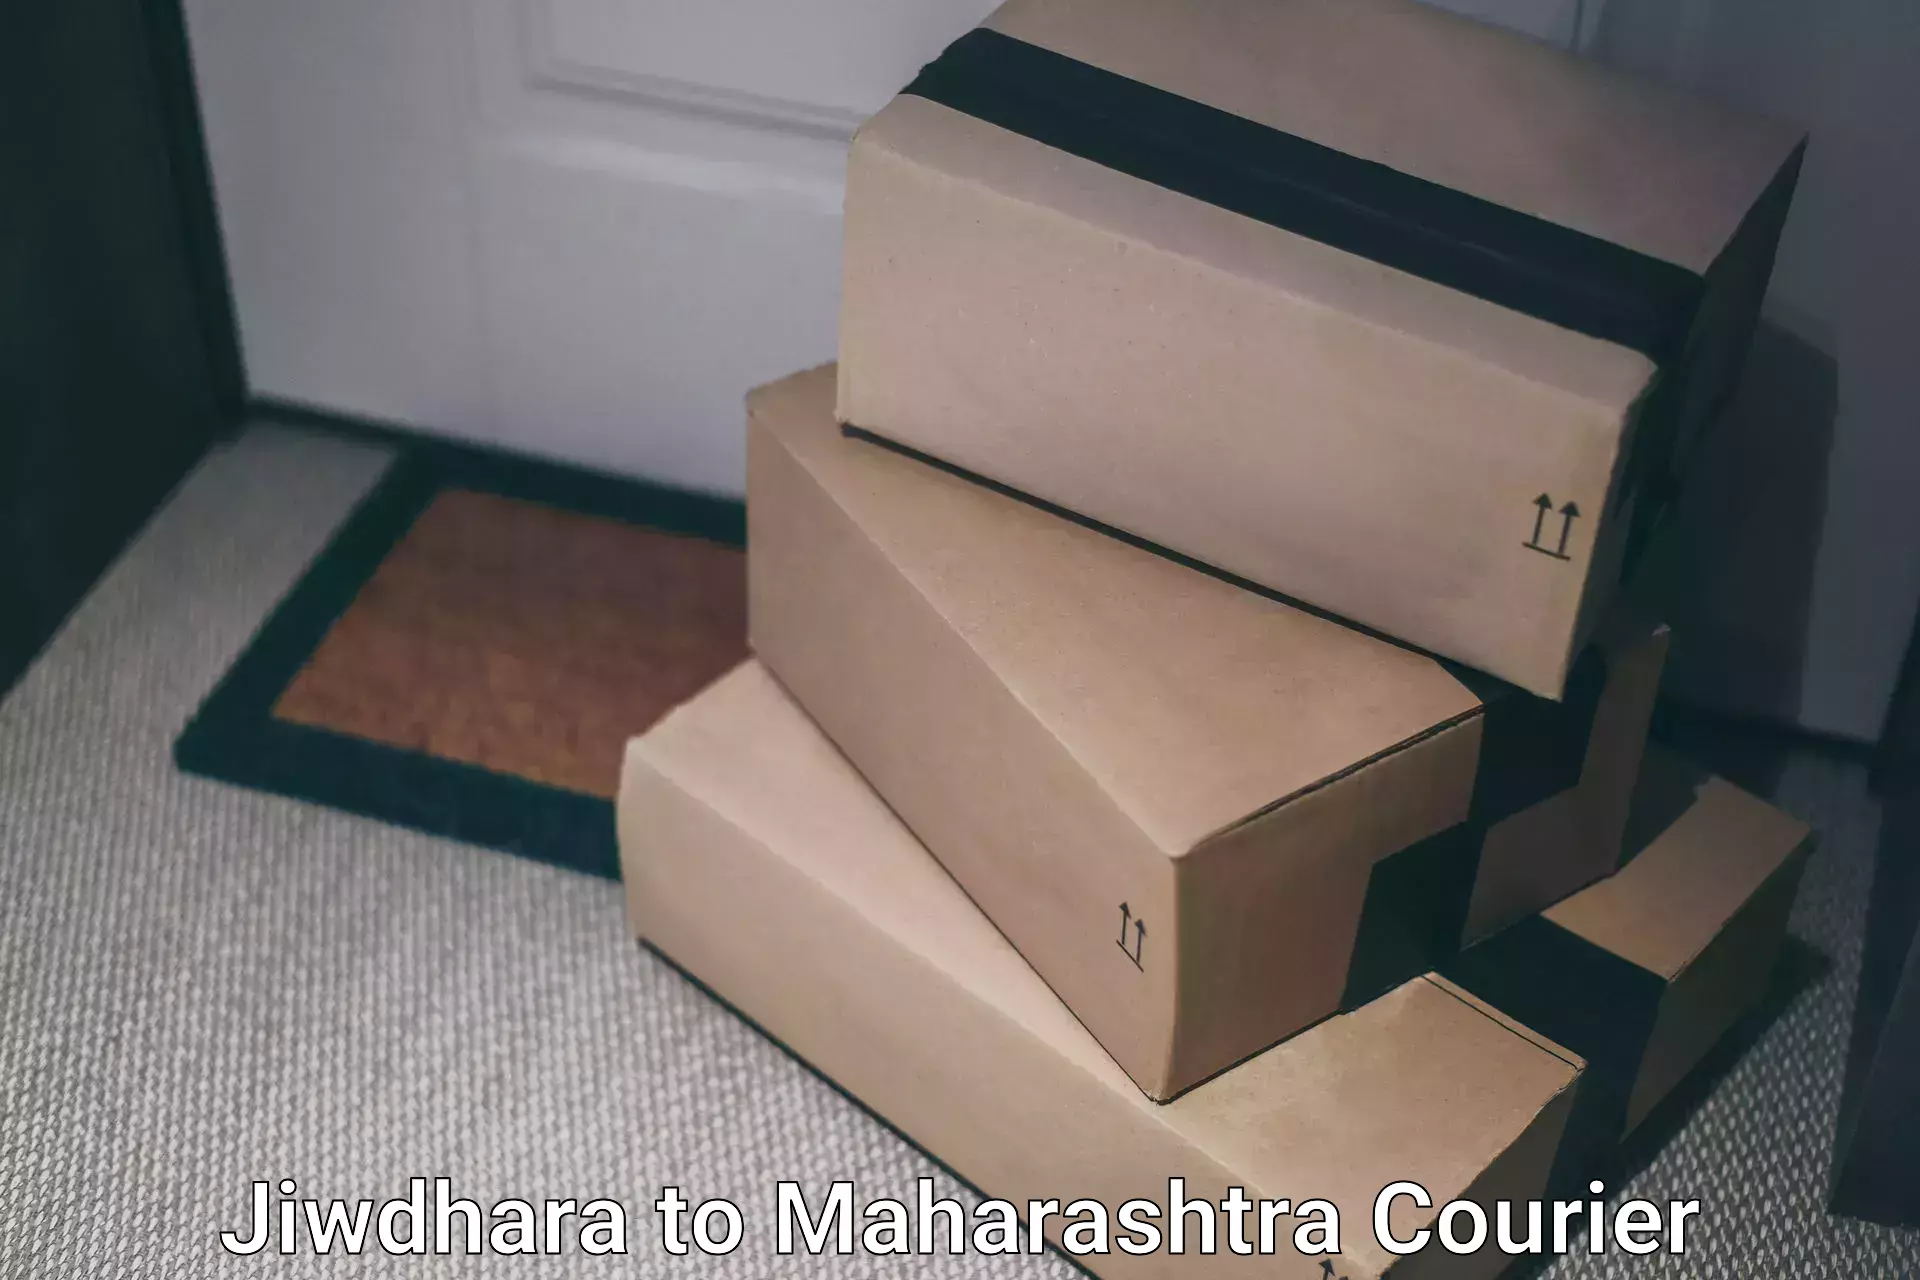 Ground shipping in Jiwdhara to Boisar